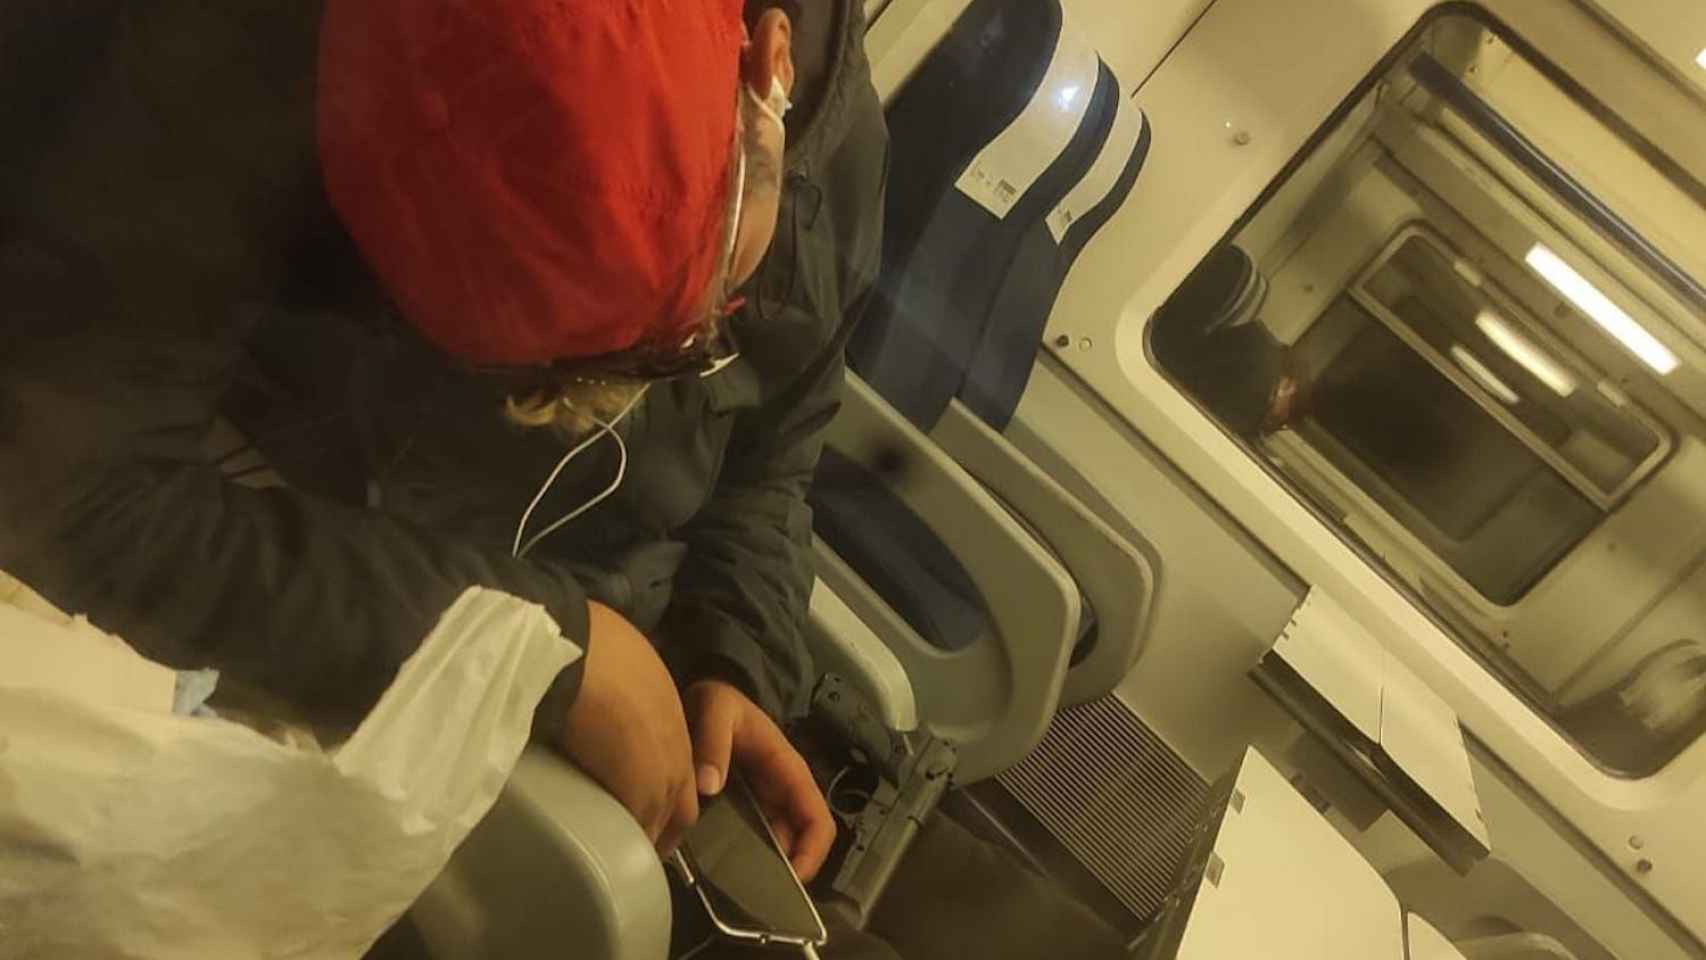 El hombre dormía, en el interior de un tren, junto a un arma de juguete / CEDIDA